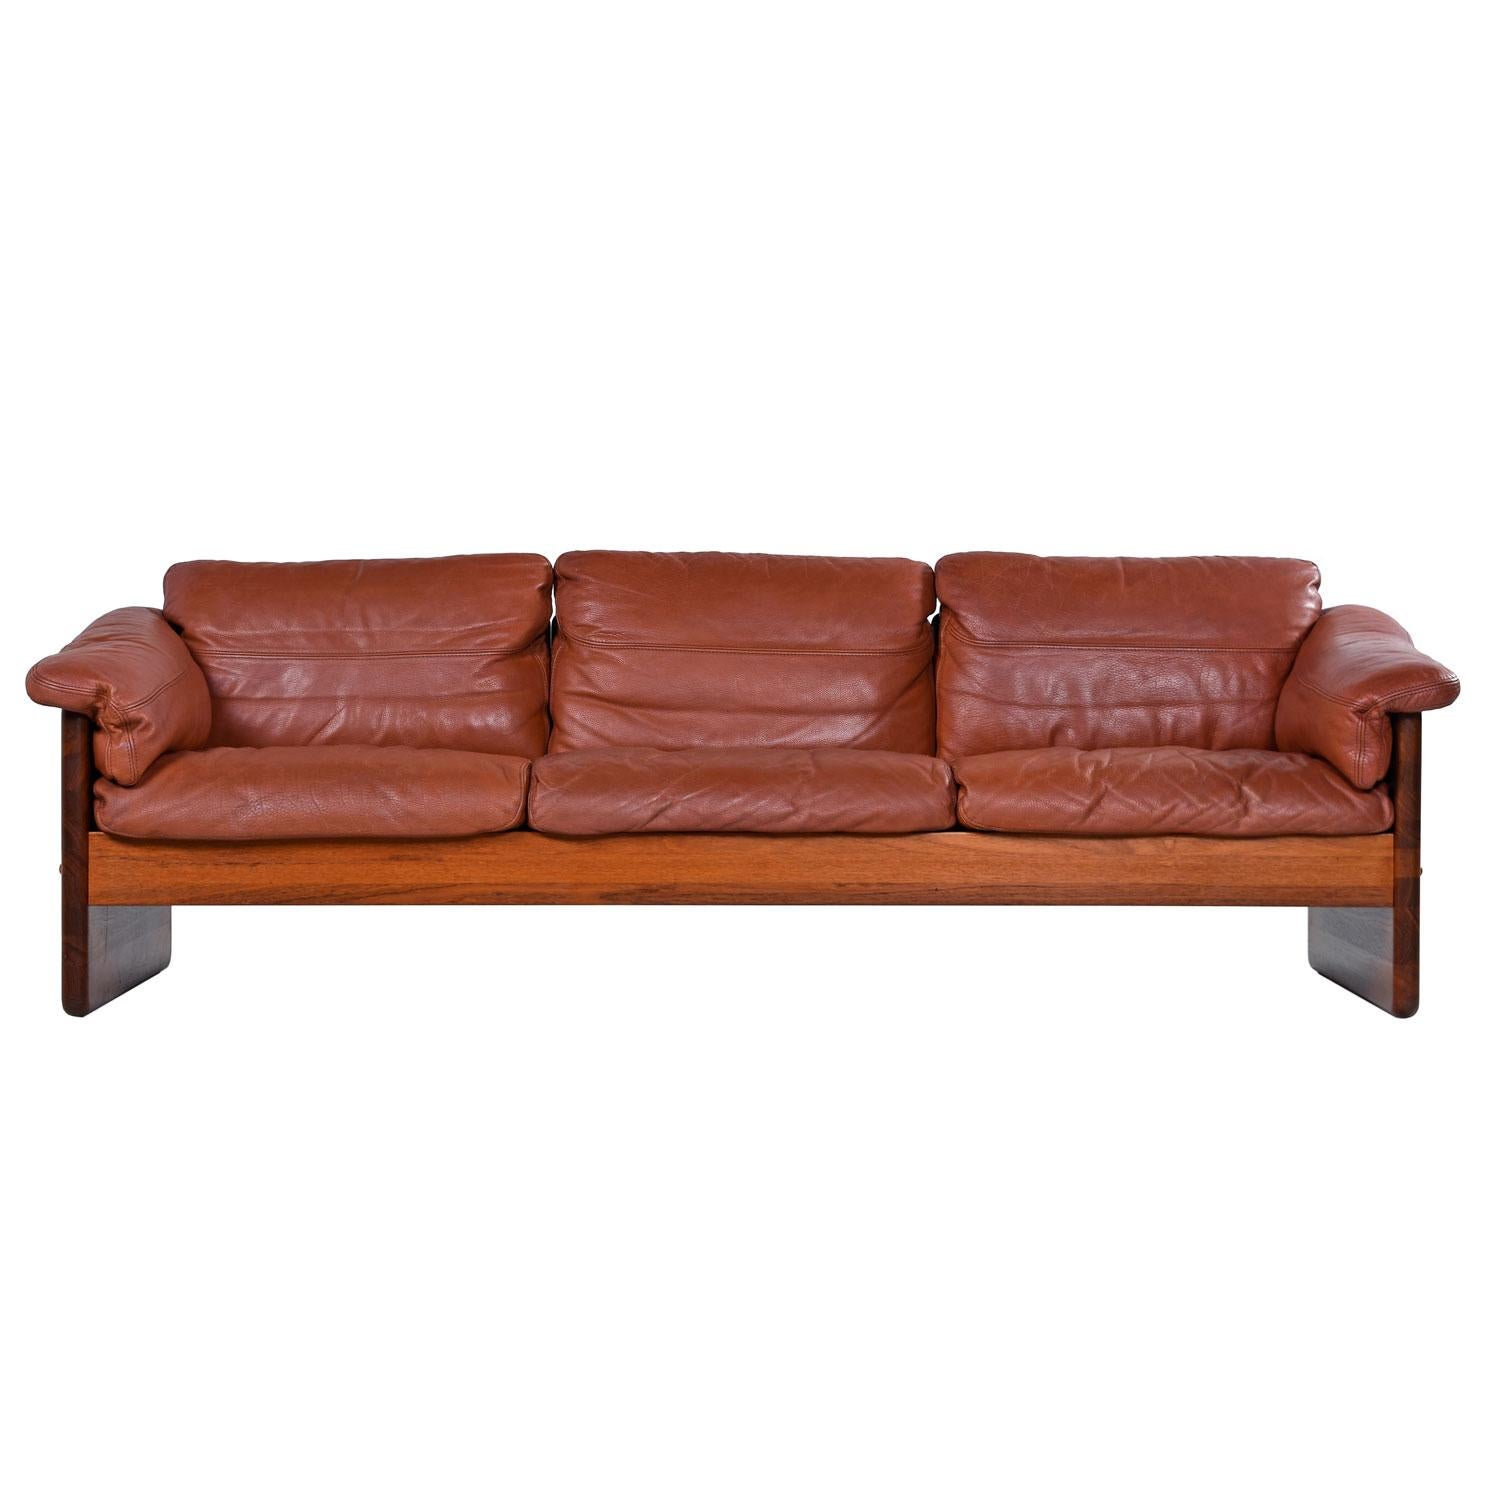 Mikael Laursen 3-Seat Solid Teak Danish Sofa Couch Original Cognac Leather